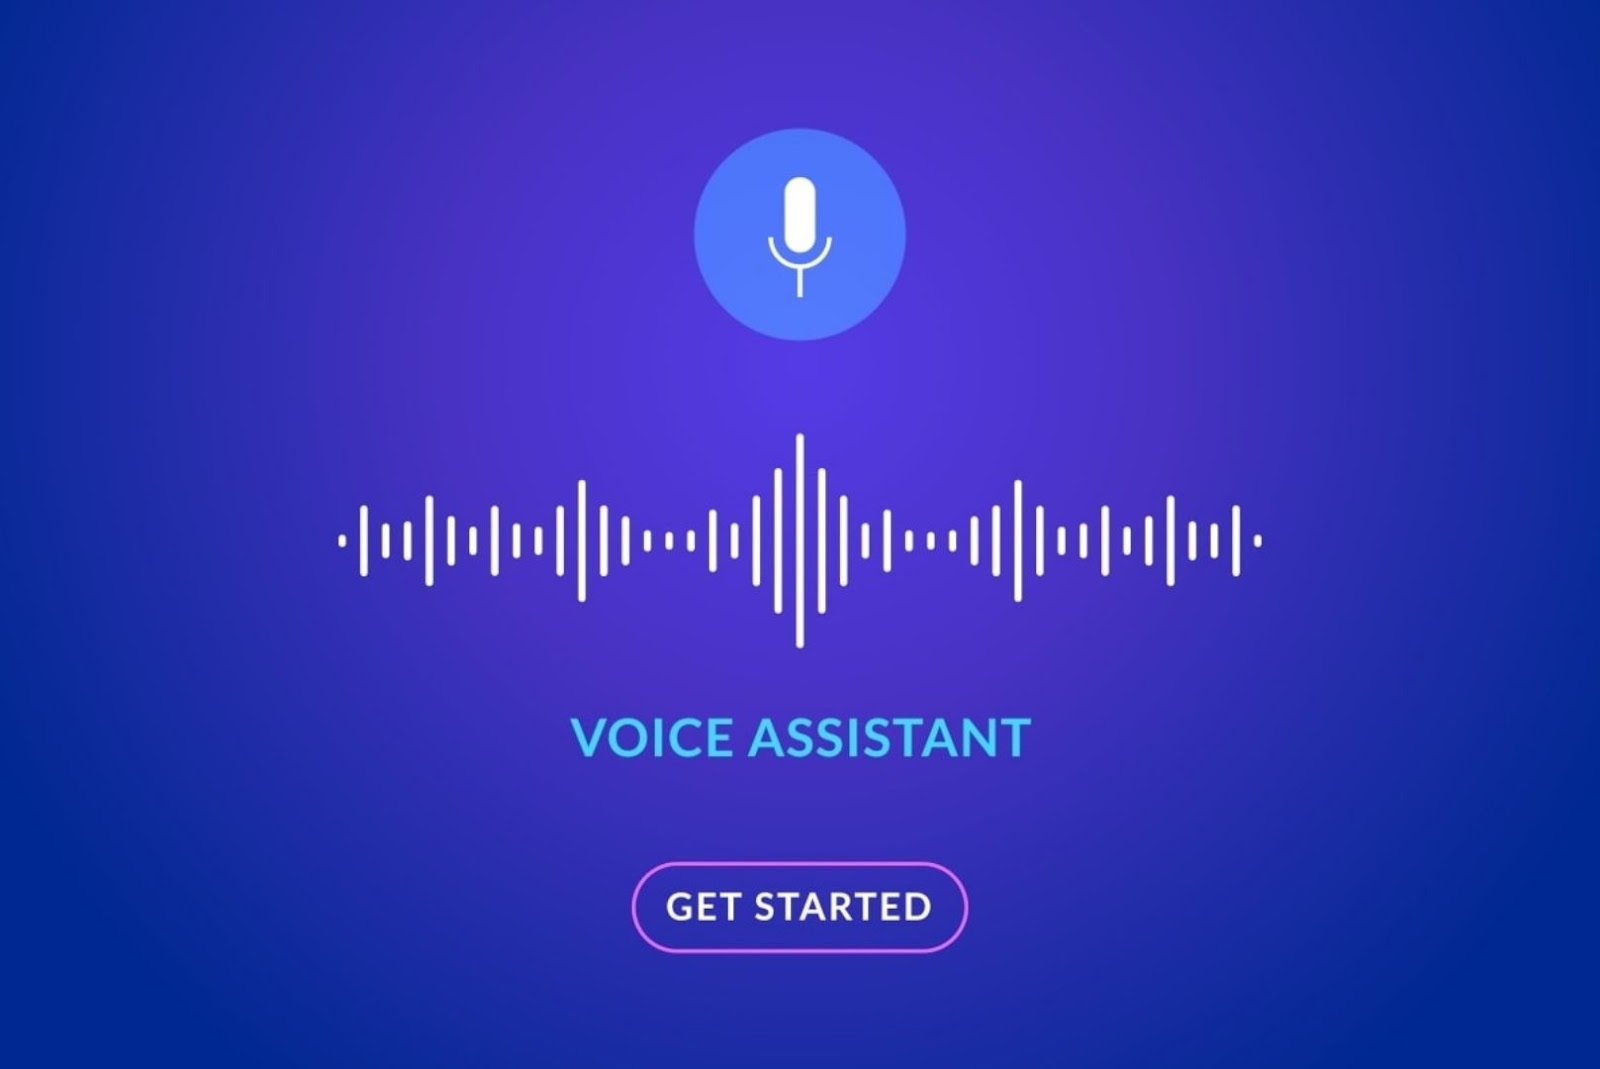 Voice Assistant